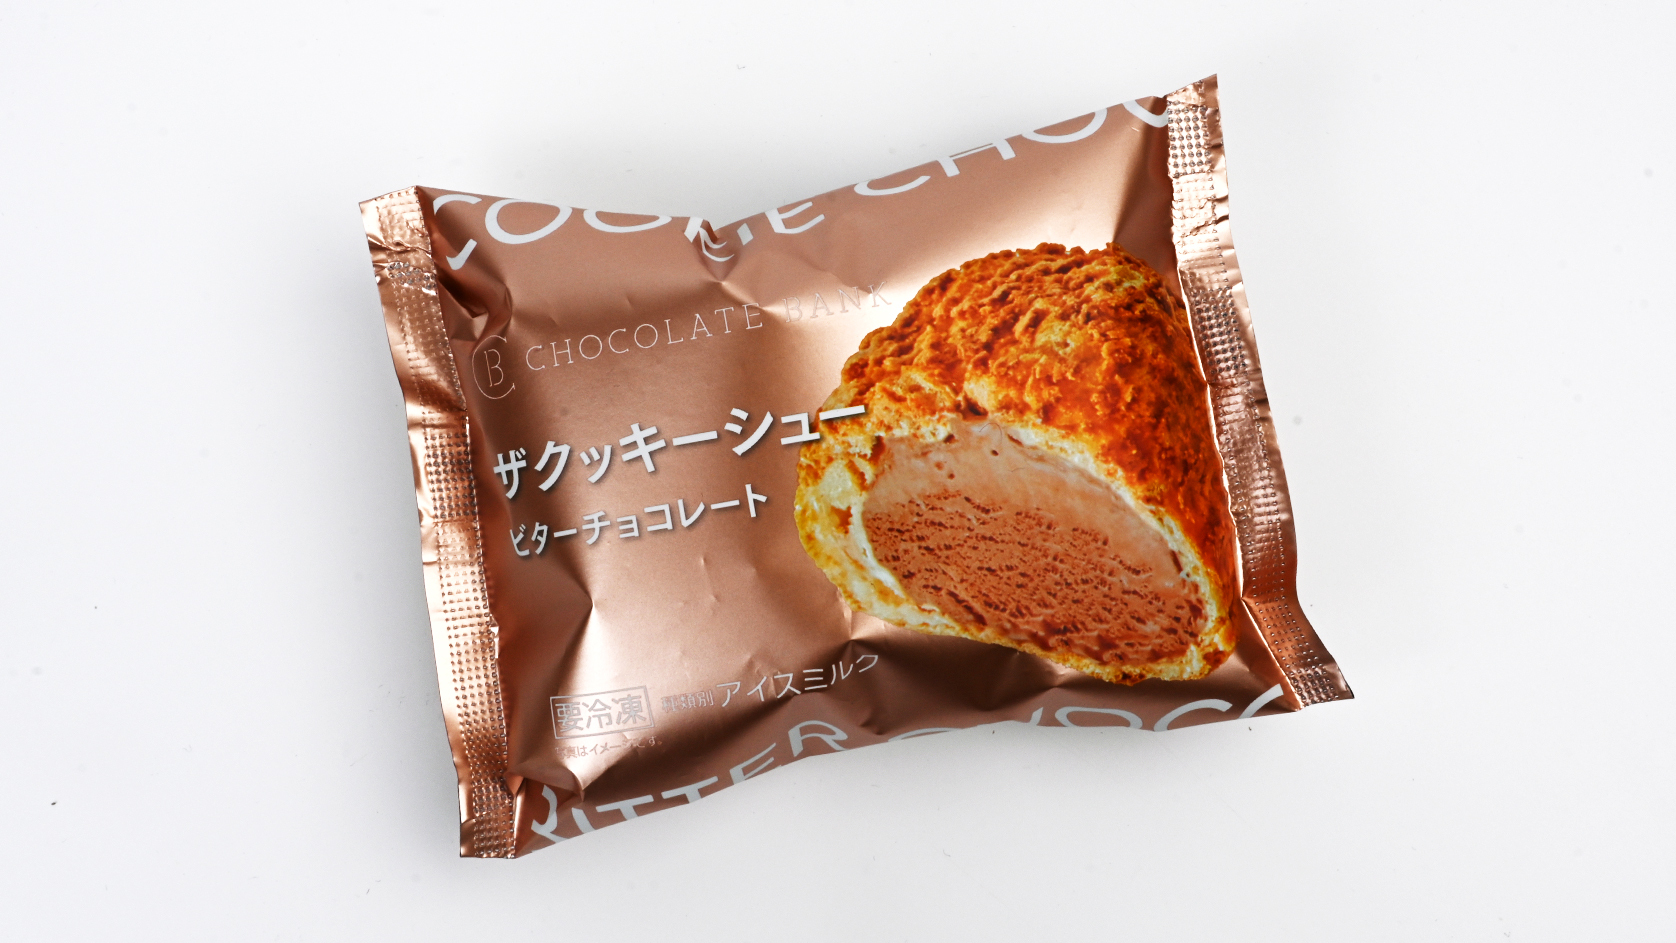 『チョコレートバンク ザクッキーシュー ビターチョコレート』